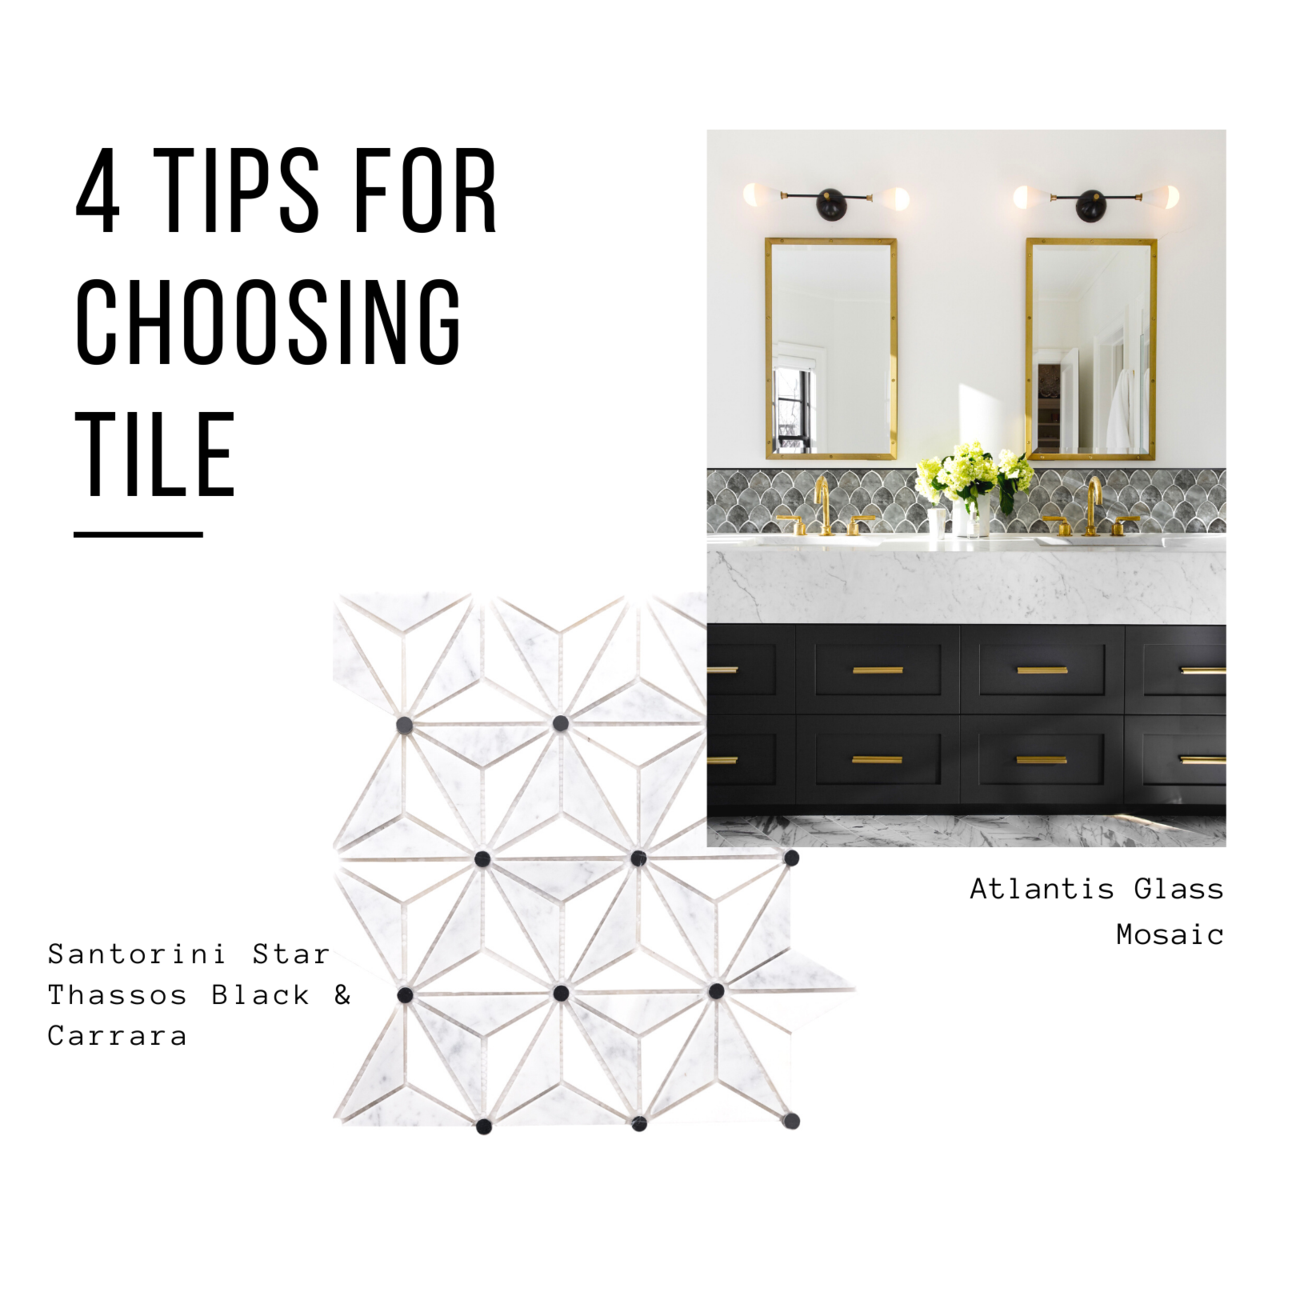 4 Tips For Choosing Tile